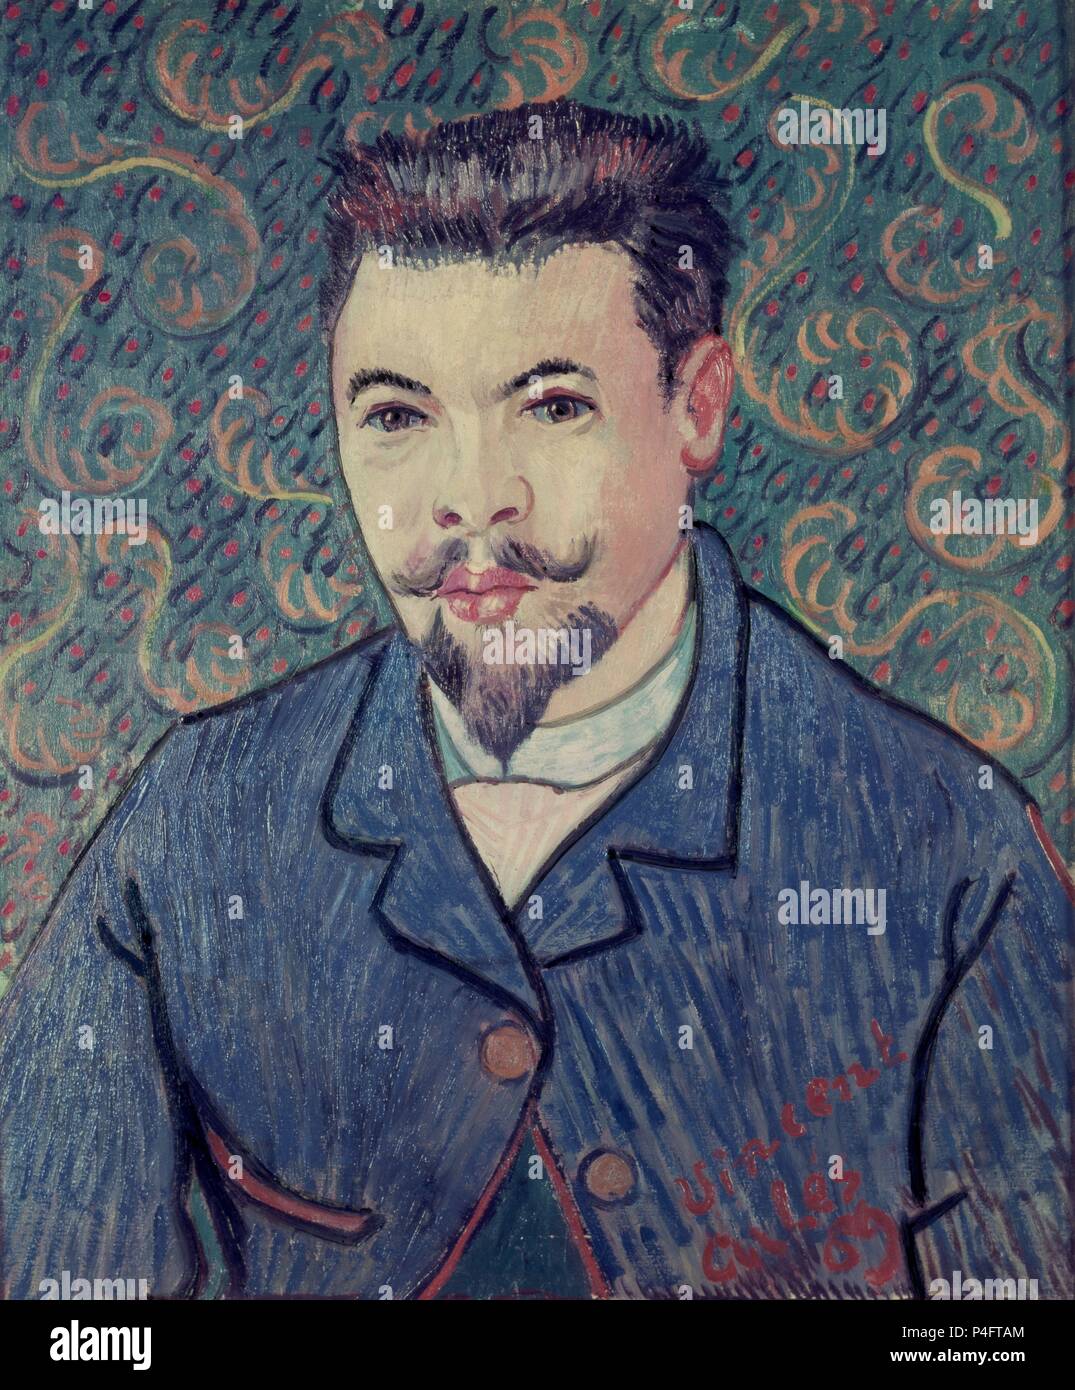 Portrait von Dr. Felix Rey - 1889 - 64 x 53 cm - Öl auf Leinwand. Autor: Vincent van Gogh (1853-1890). Lage: MUSEO Puschkin-museum, Moskau, Russland. Auch als: RETRATO DEL DOCTOR FELIX REY bekannt. Stockfoto